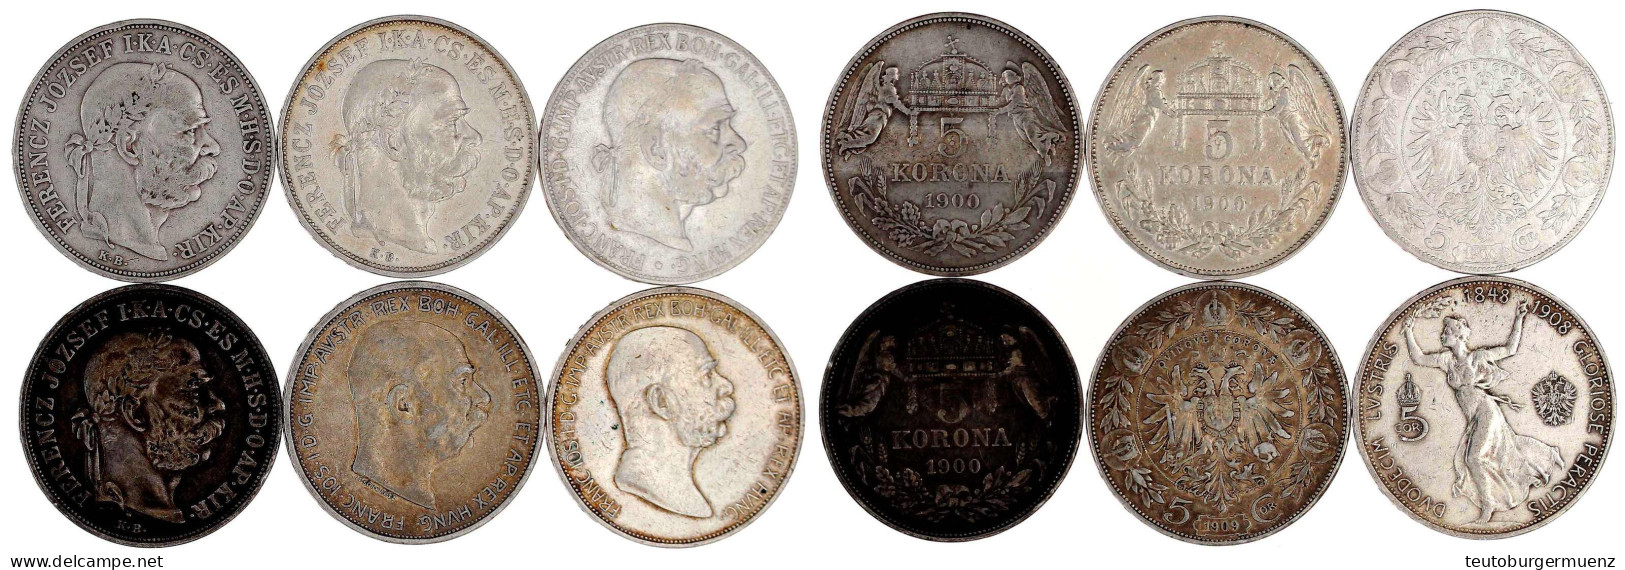 6 X 5 Kronen Aus 1900 Bis 1909, Dabei Auch Regierungsjub. 1908. Meist Sehr Schön - Goldmünzen